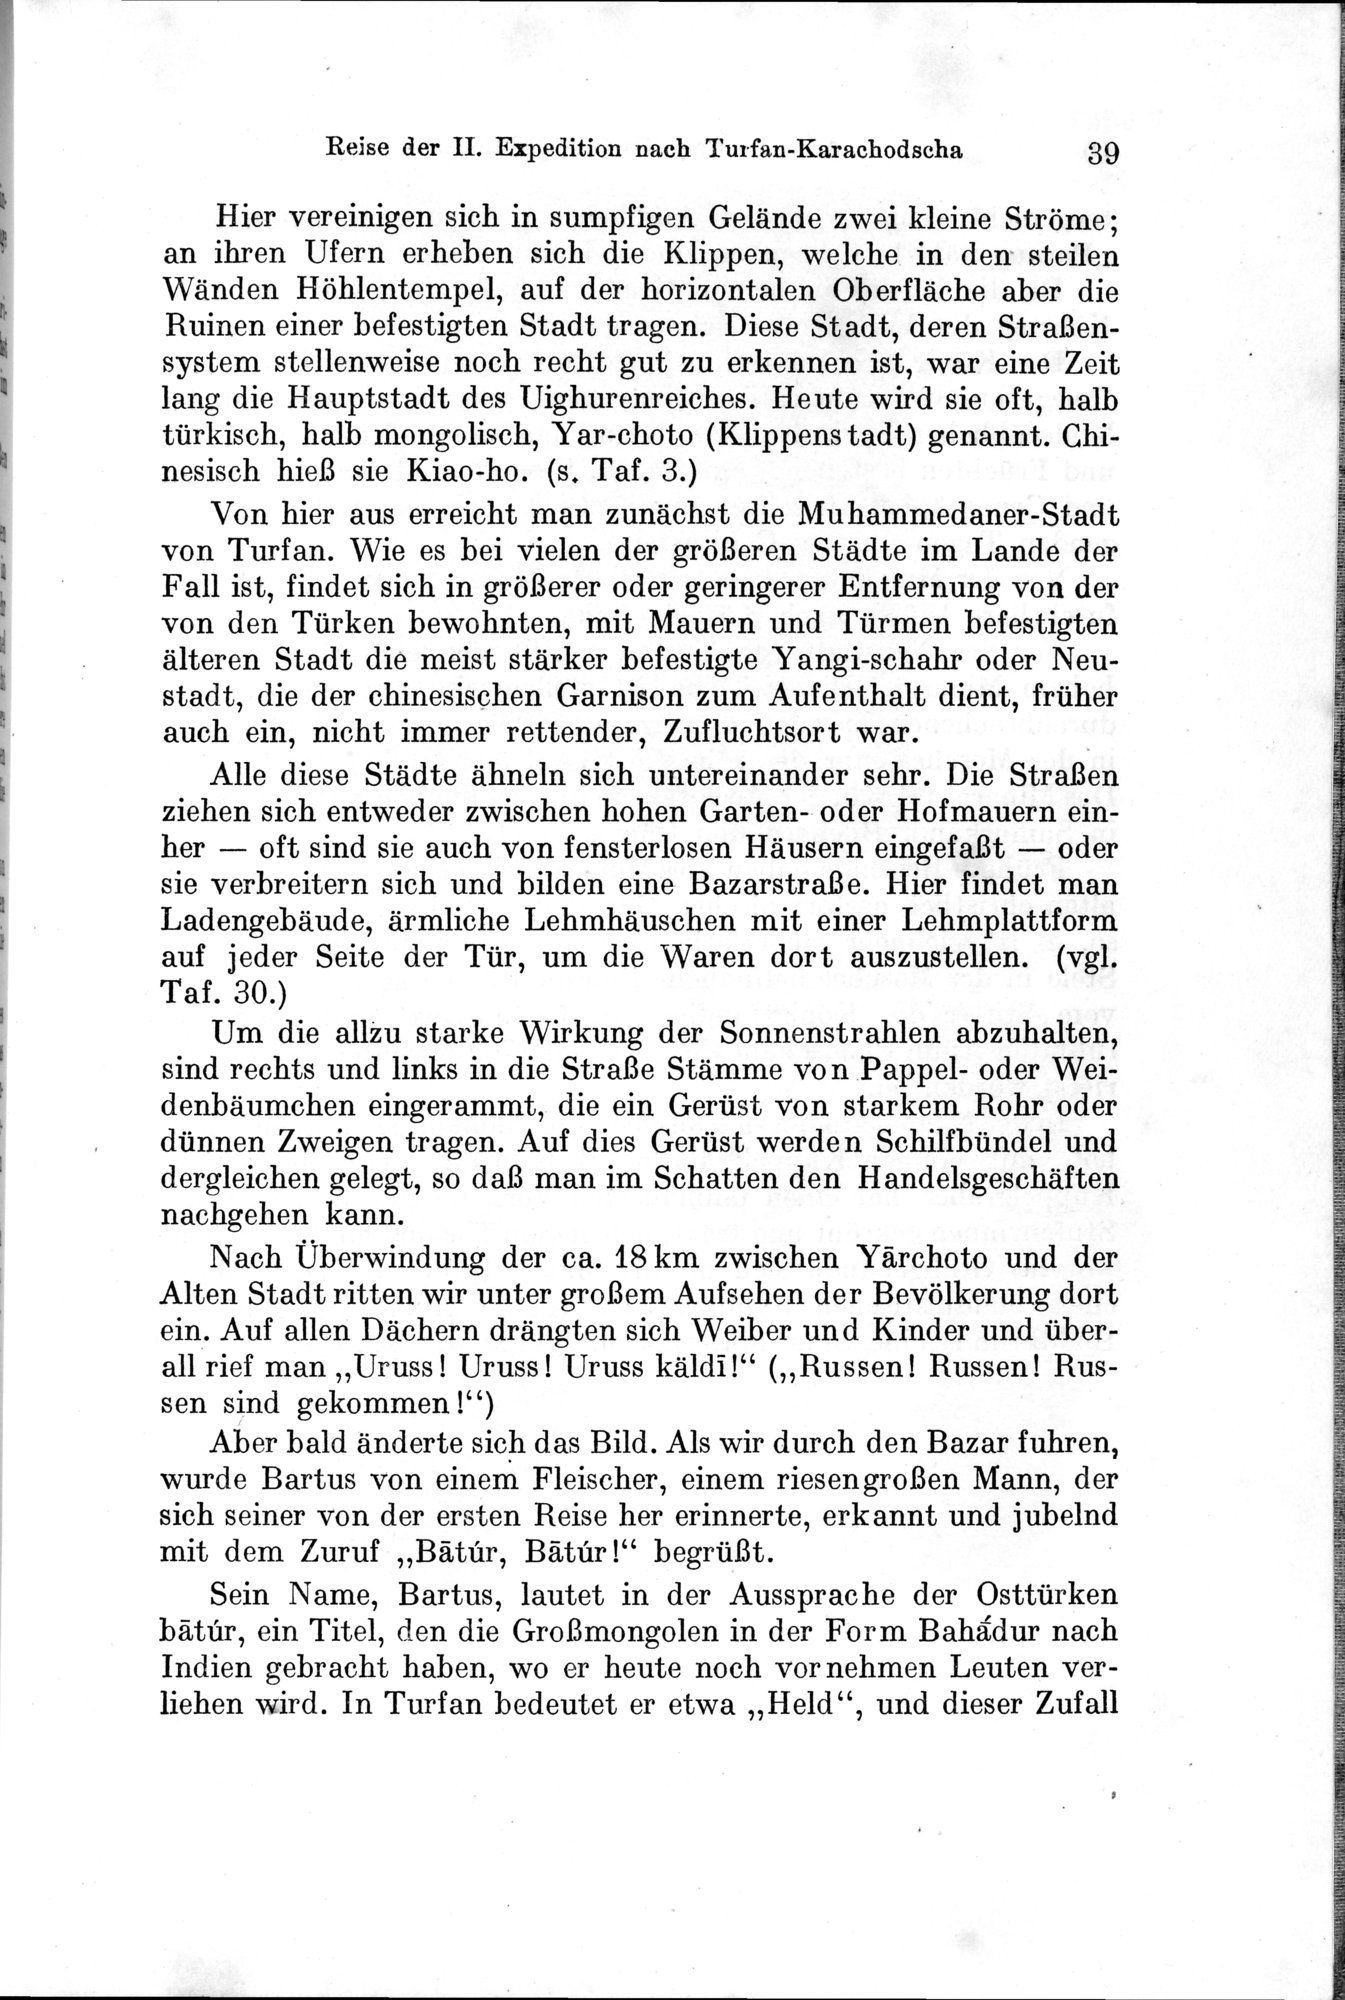 Auf Hellas Spuren in Ostturkistan : vol.1 / Page 61 (Grayscale High Resolution Image)